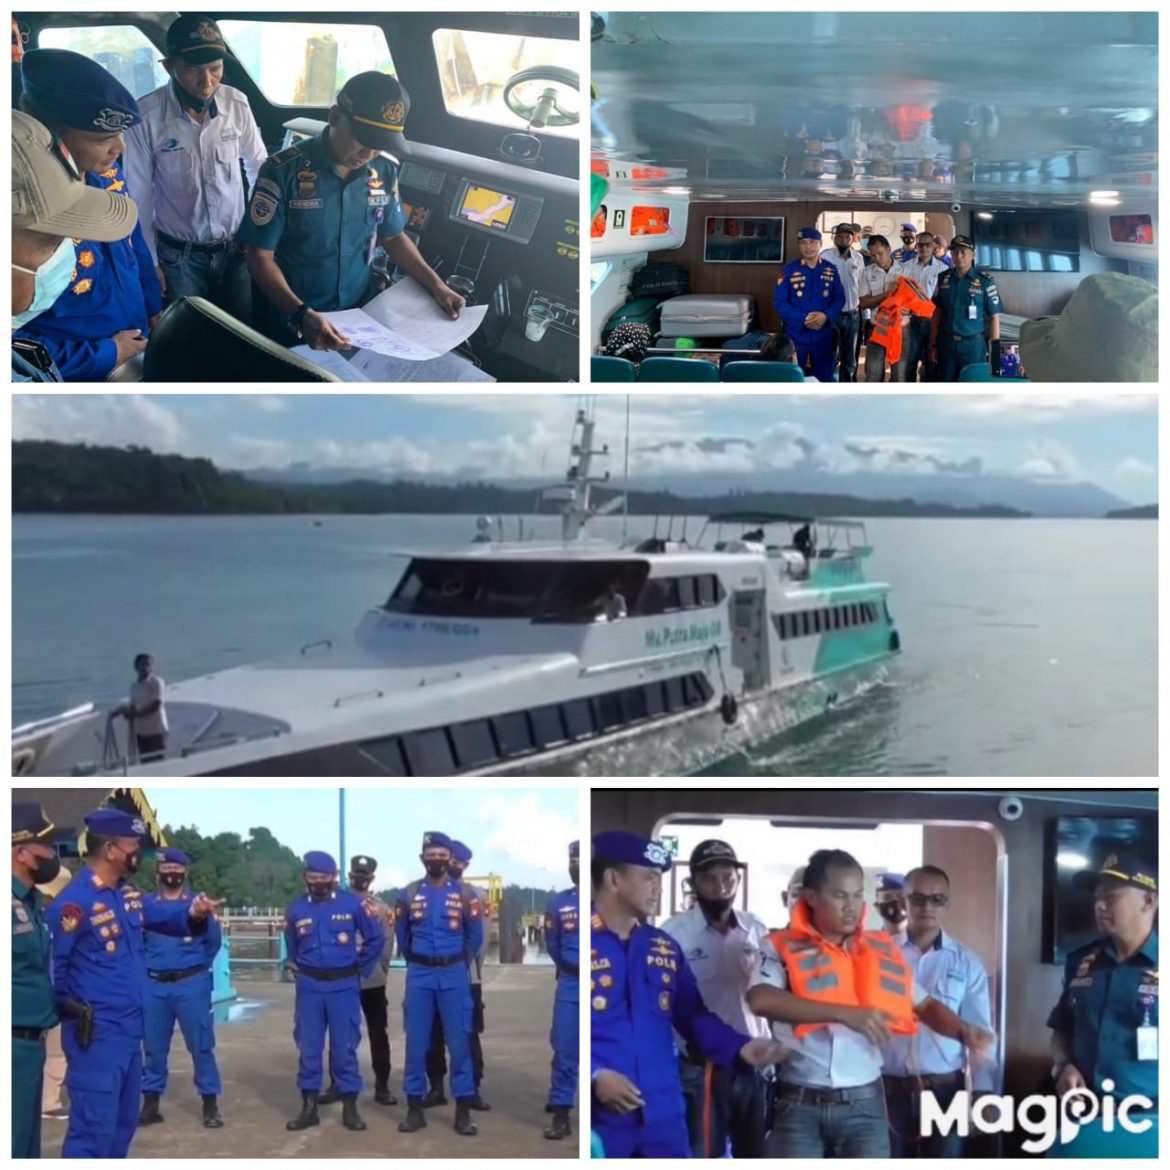 Satuan Polisi Airud Polres Lingga Bersama Syahbandar Lakukan Pemeriksaan Kelayakan Alat Keselamatan Kapal